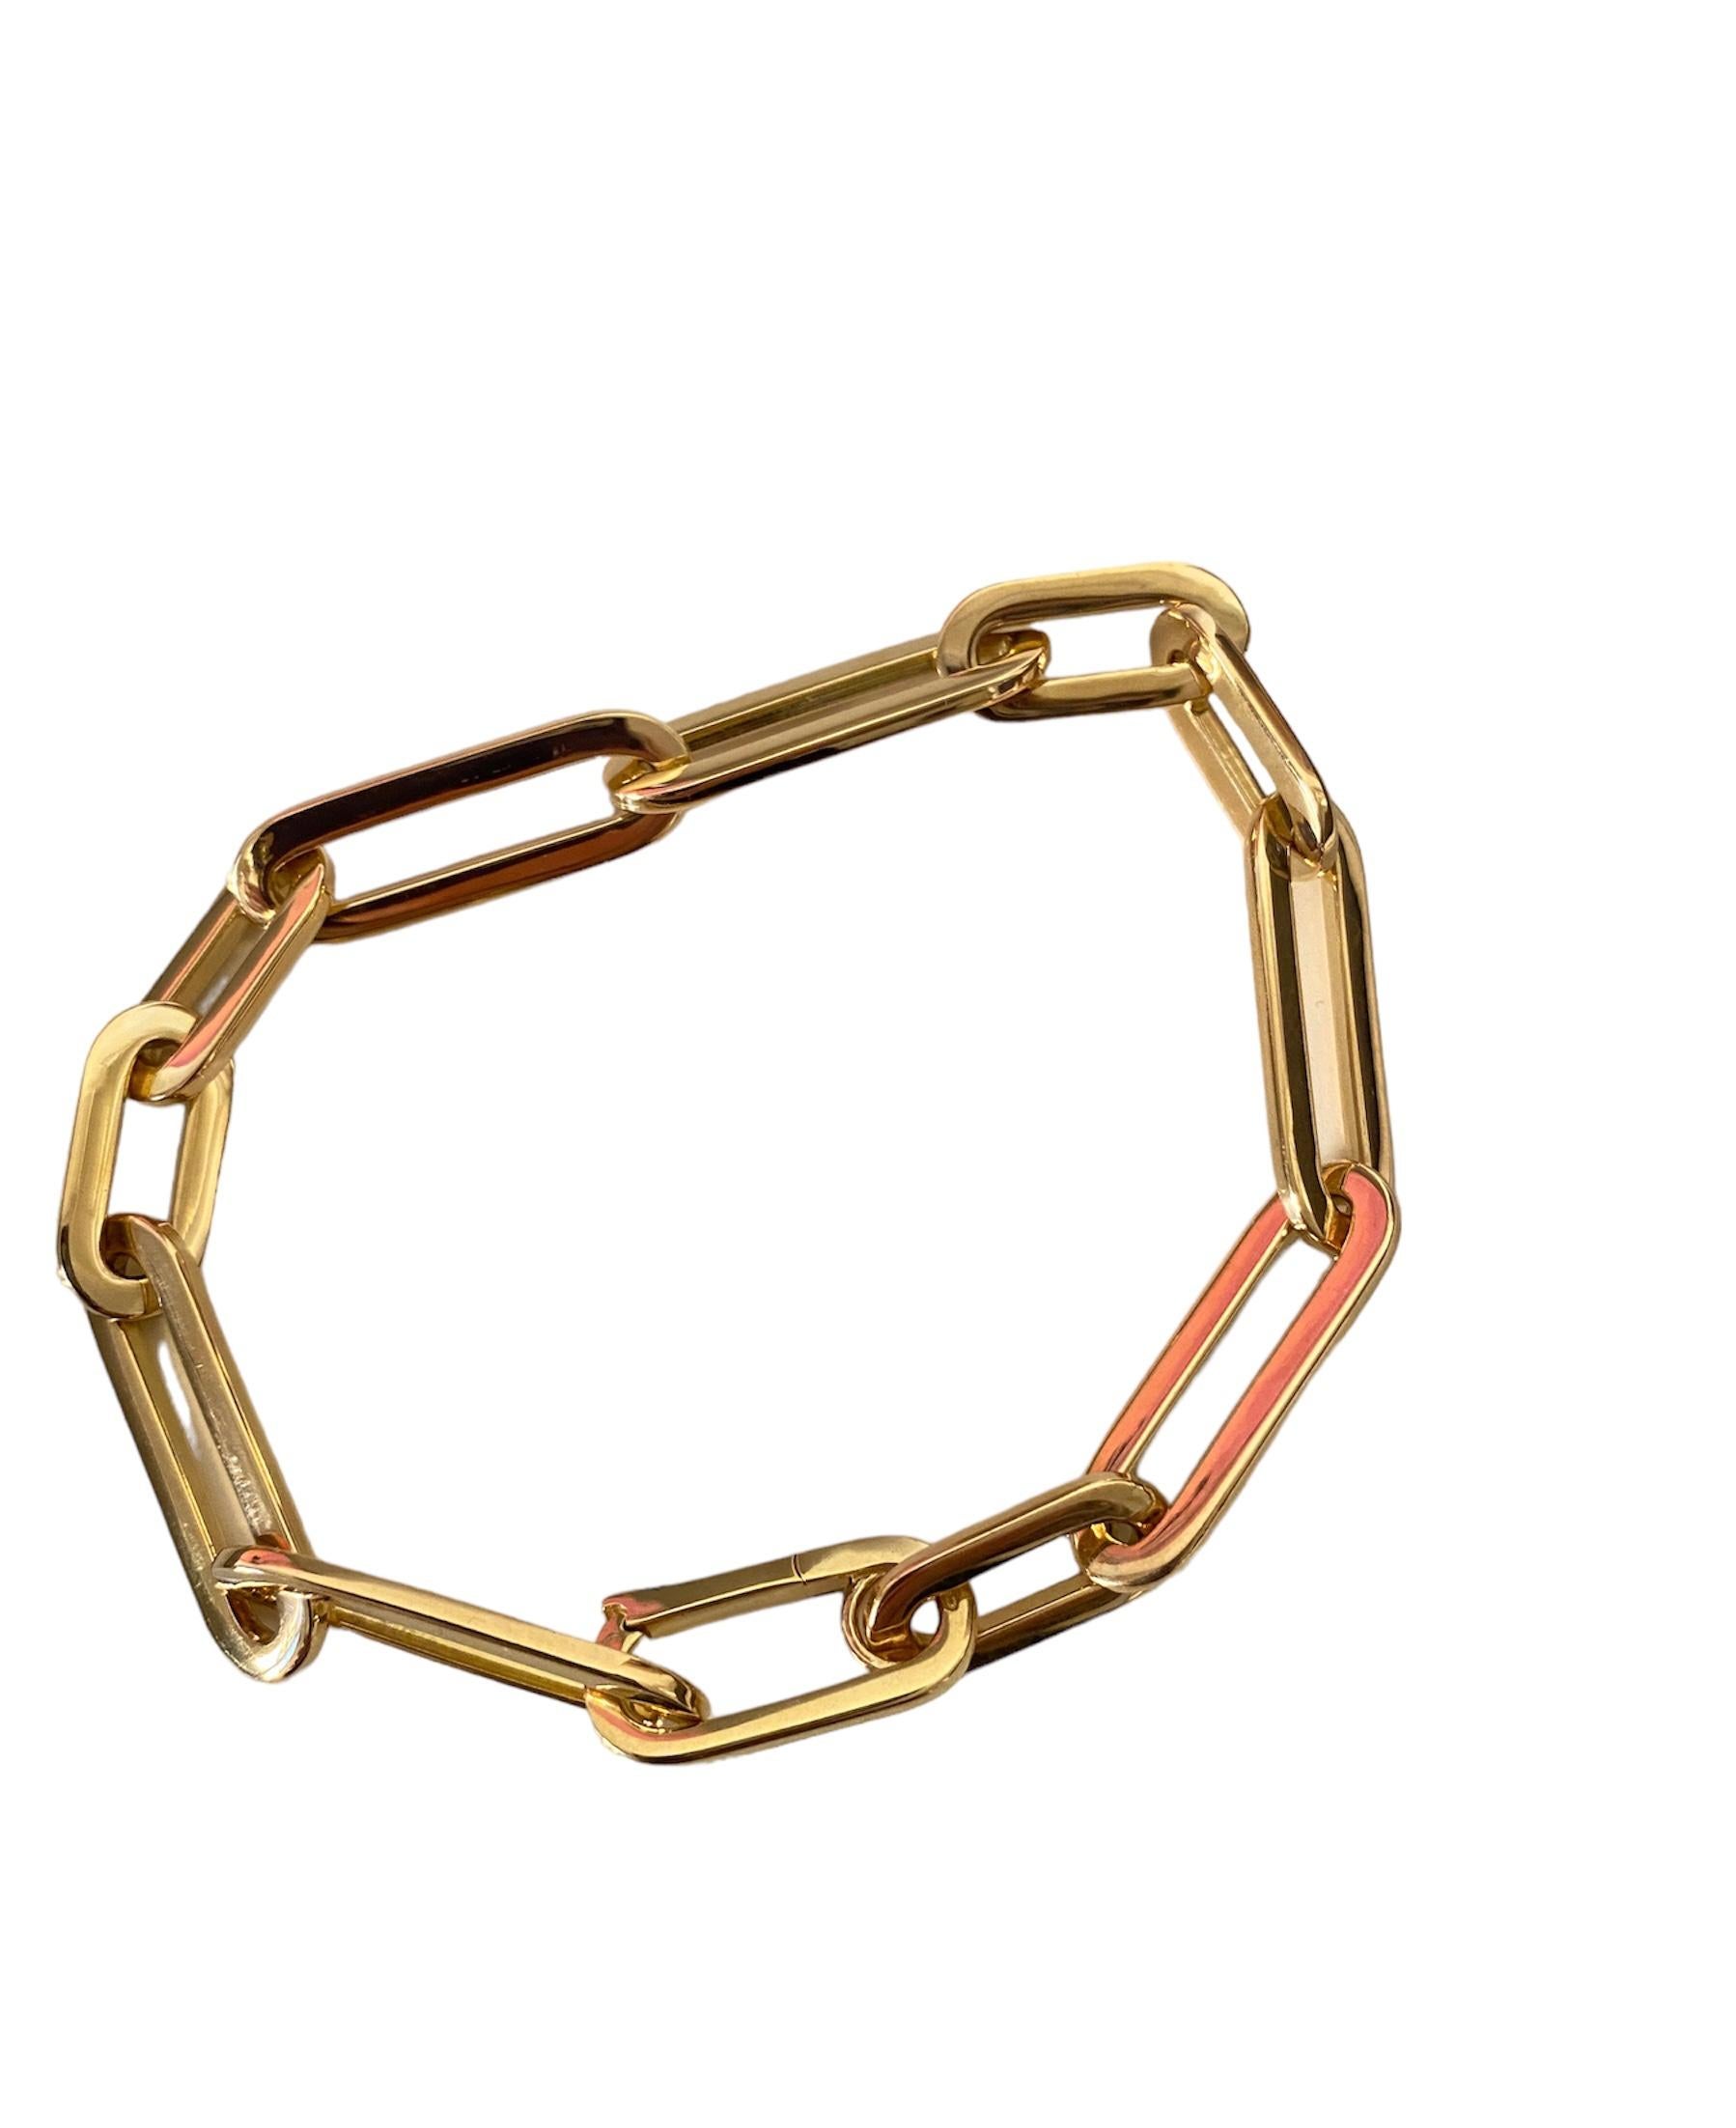 Prêt à être expédié. Rossella Ugolini Designal Collection Modern Bracelet unisexe en chaîne à maillons Fabriqué à la main en Italie.
Ce bracelet en or jaune 18 carats est particulier car le fermoir a la même forme ovale et se fond dans la chaîne. Sa